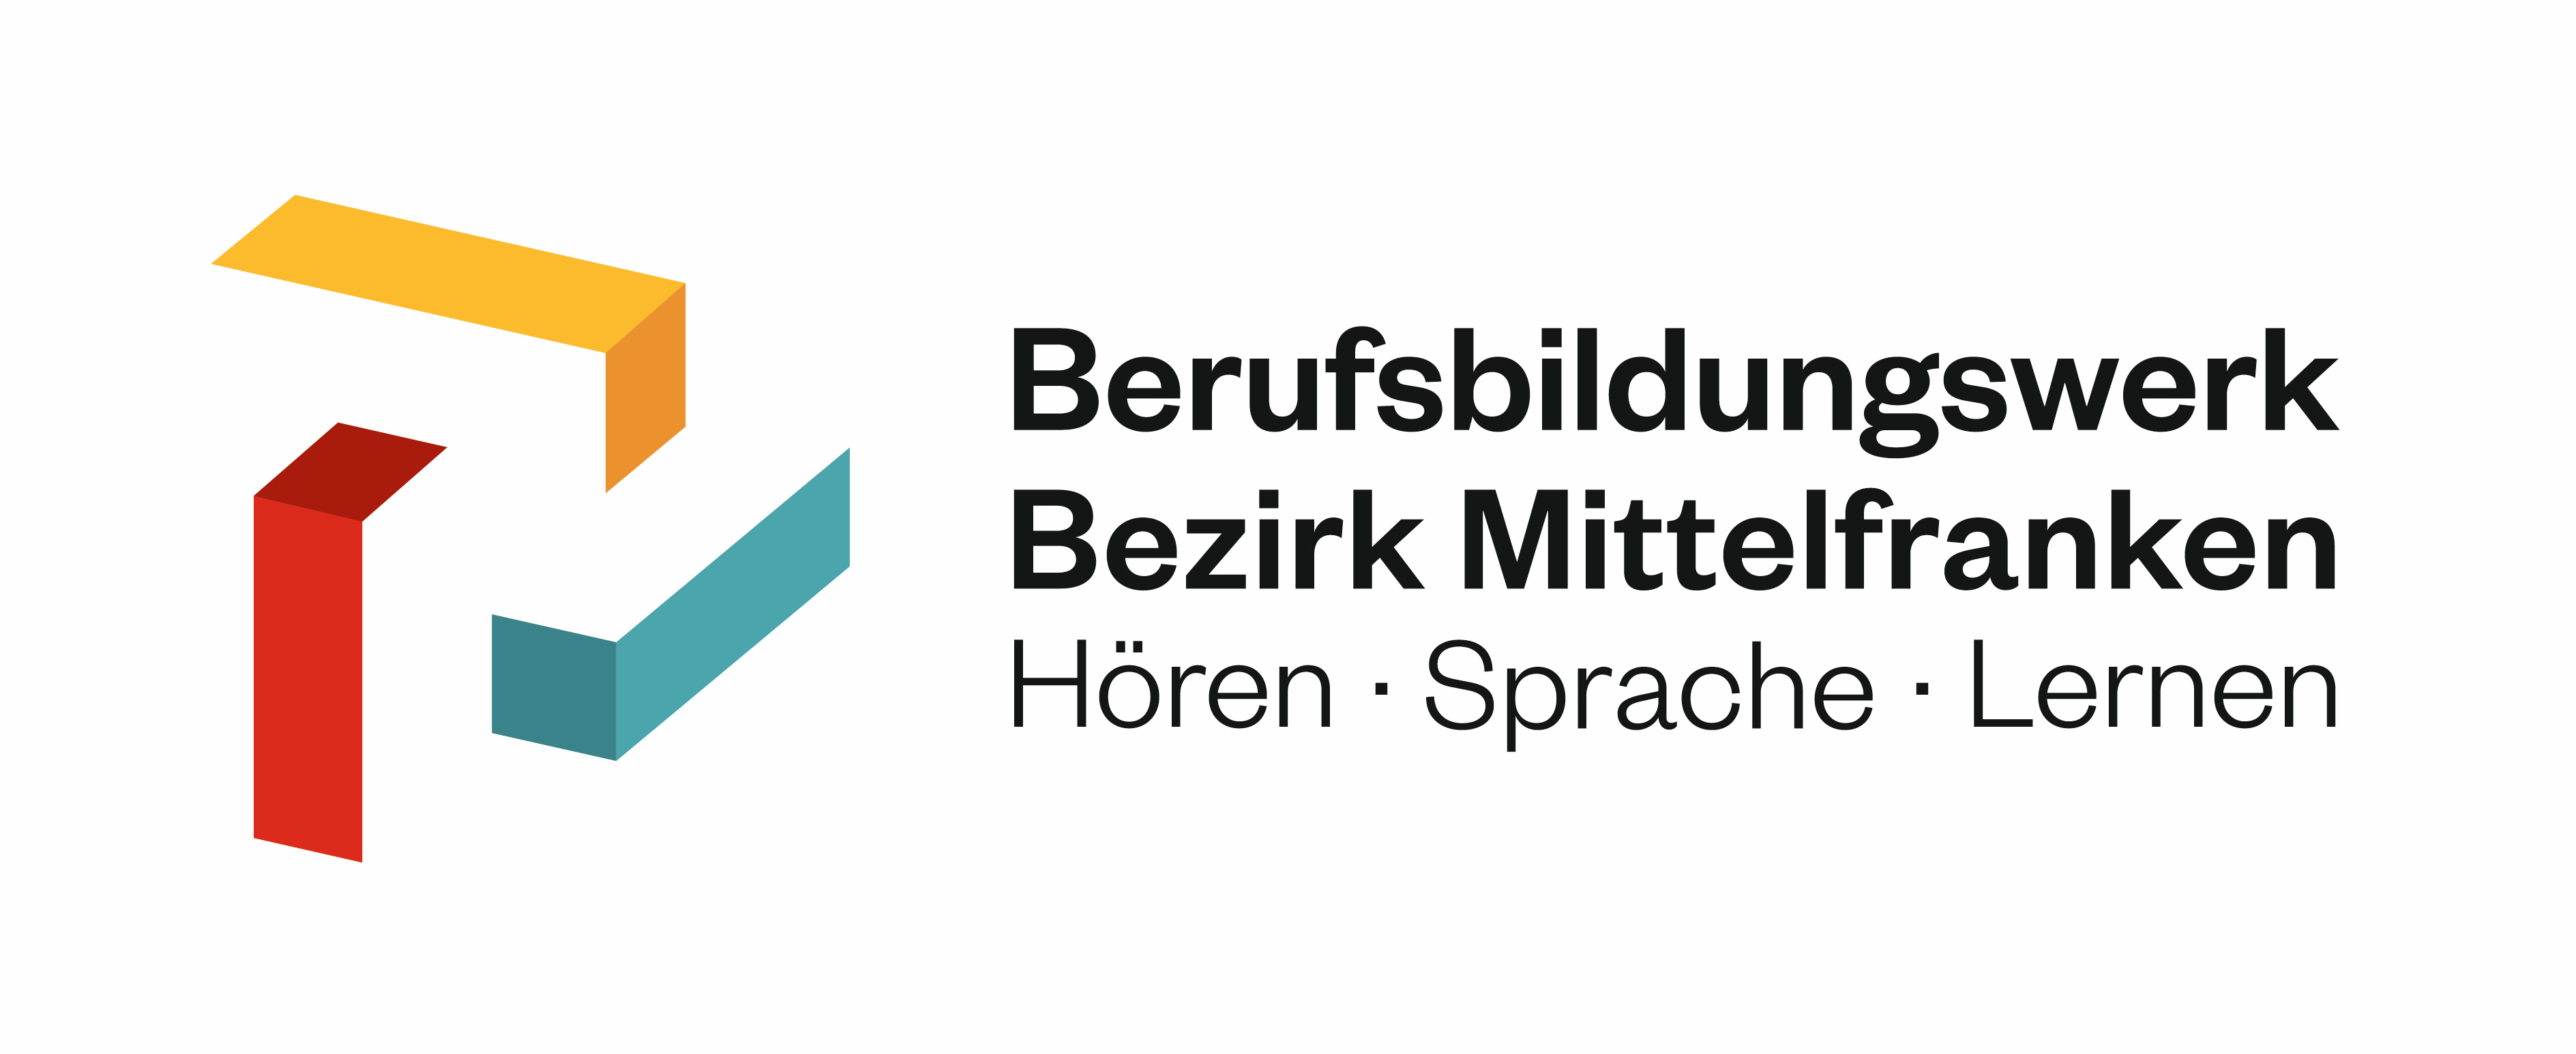 Berufsbildungswerk Bezirk Mittelfranken logo